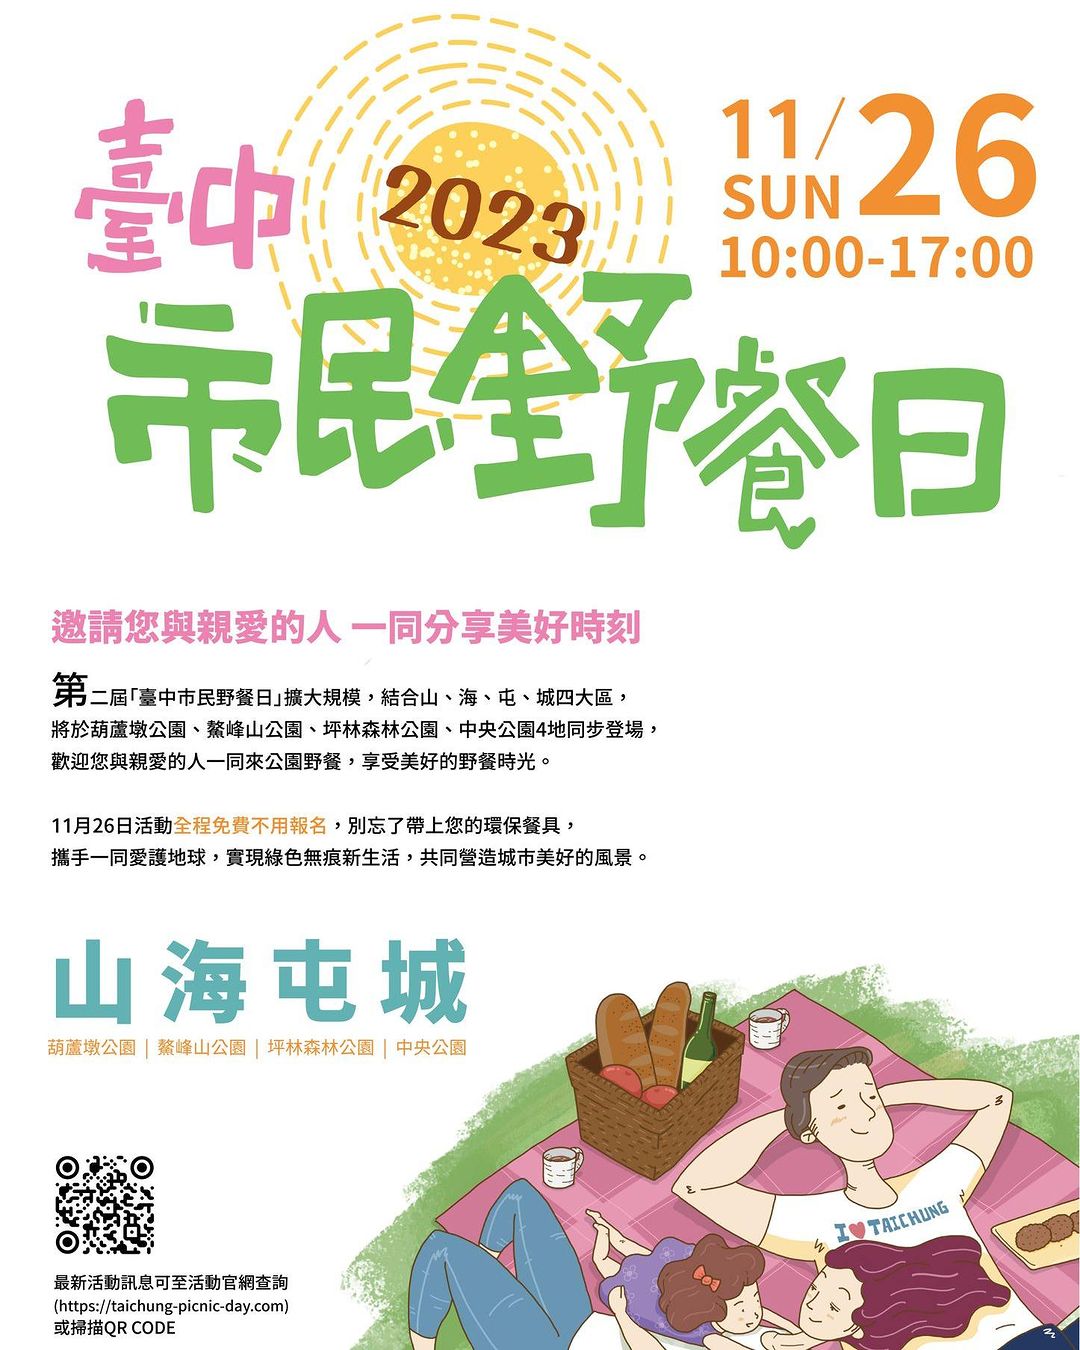 ＼久等了！ #2023臺中市民野餐日 11/26 舉辦！／